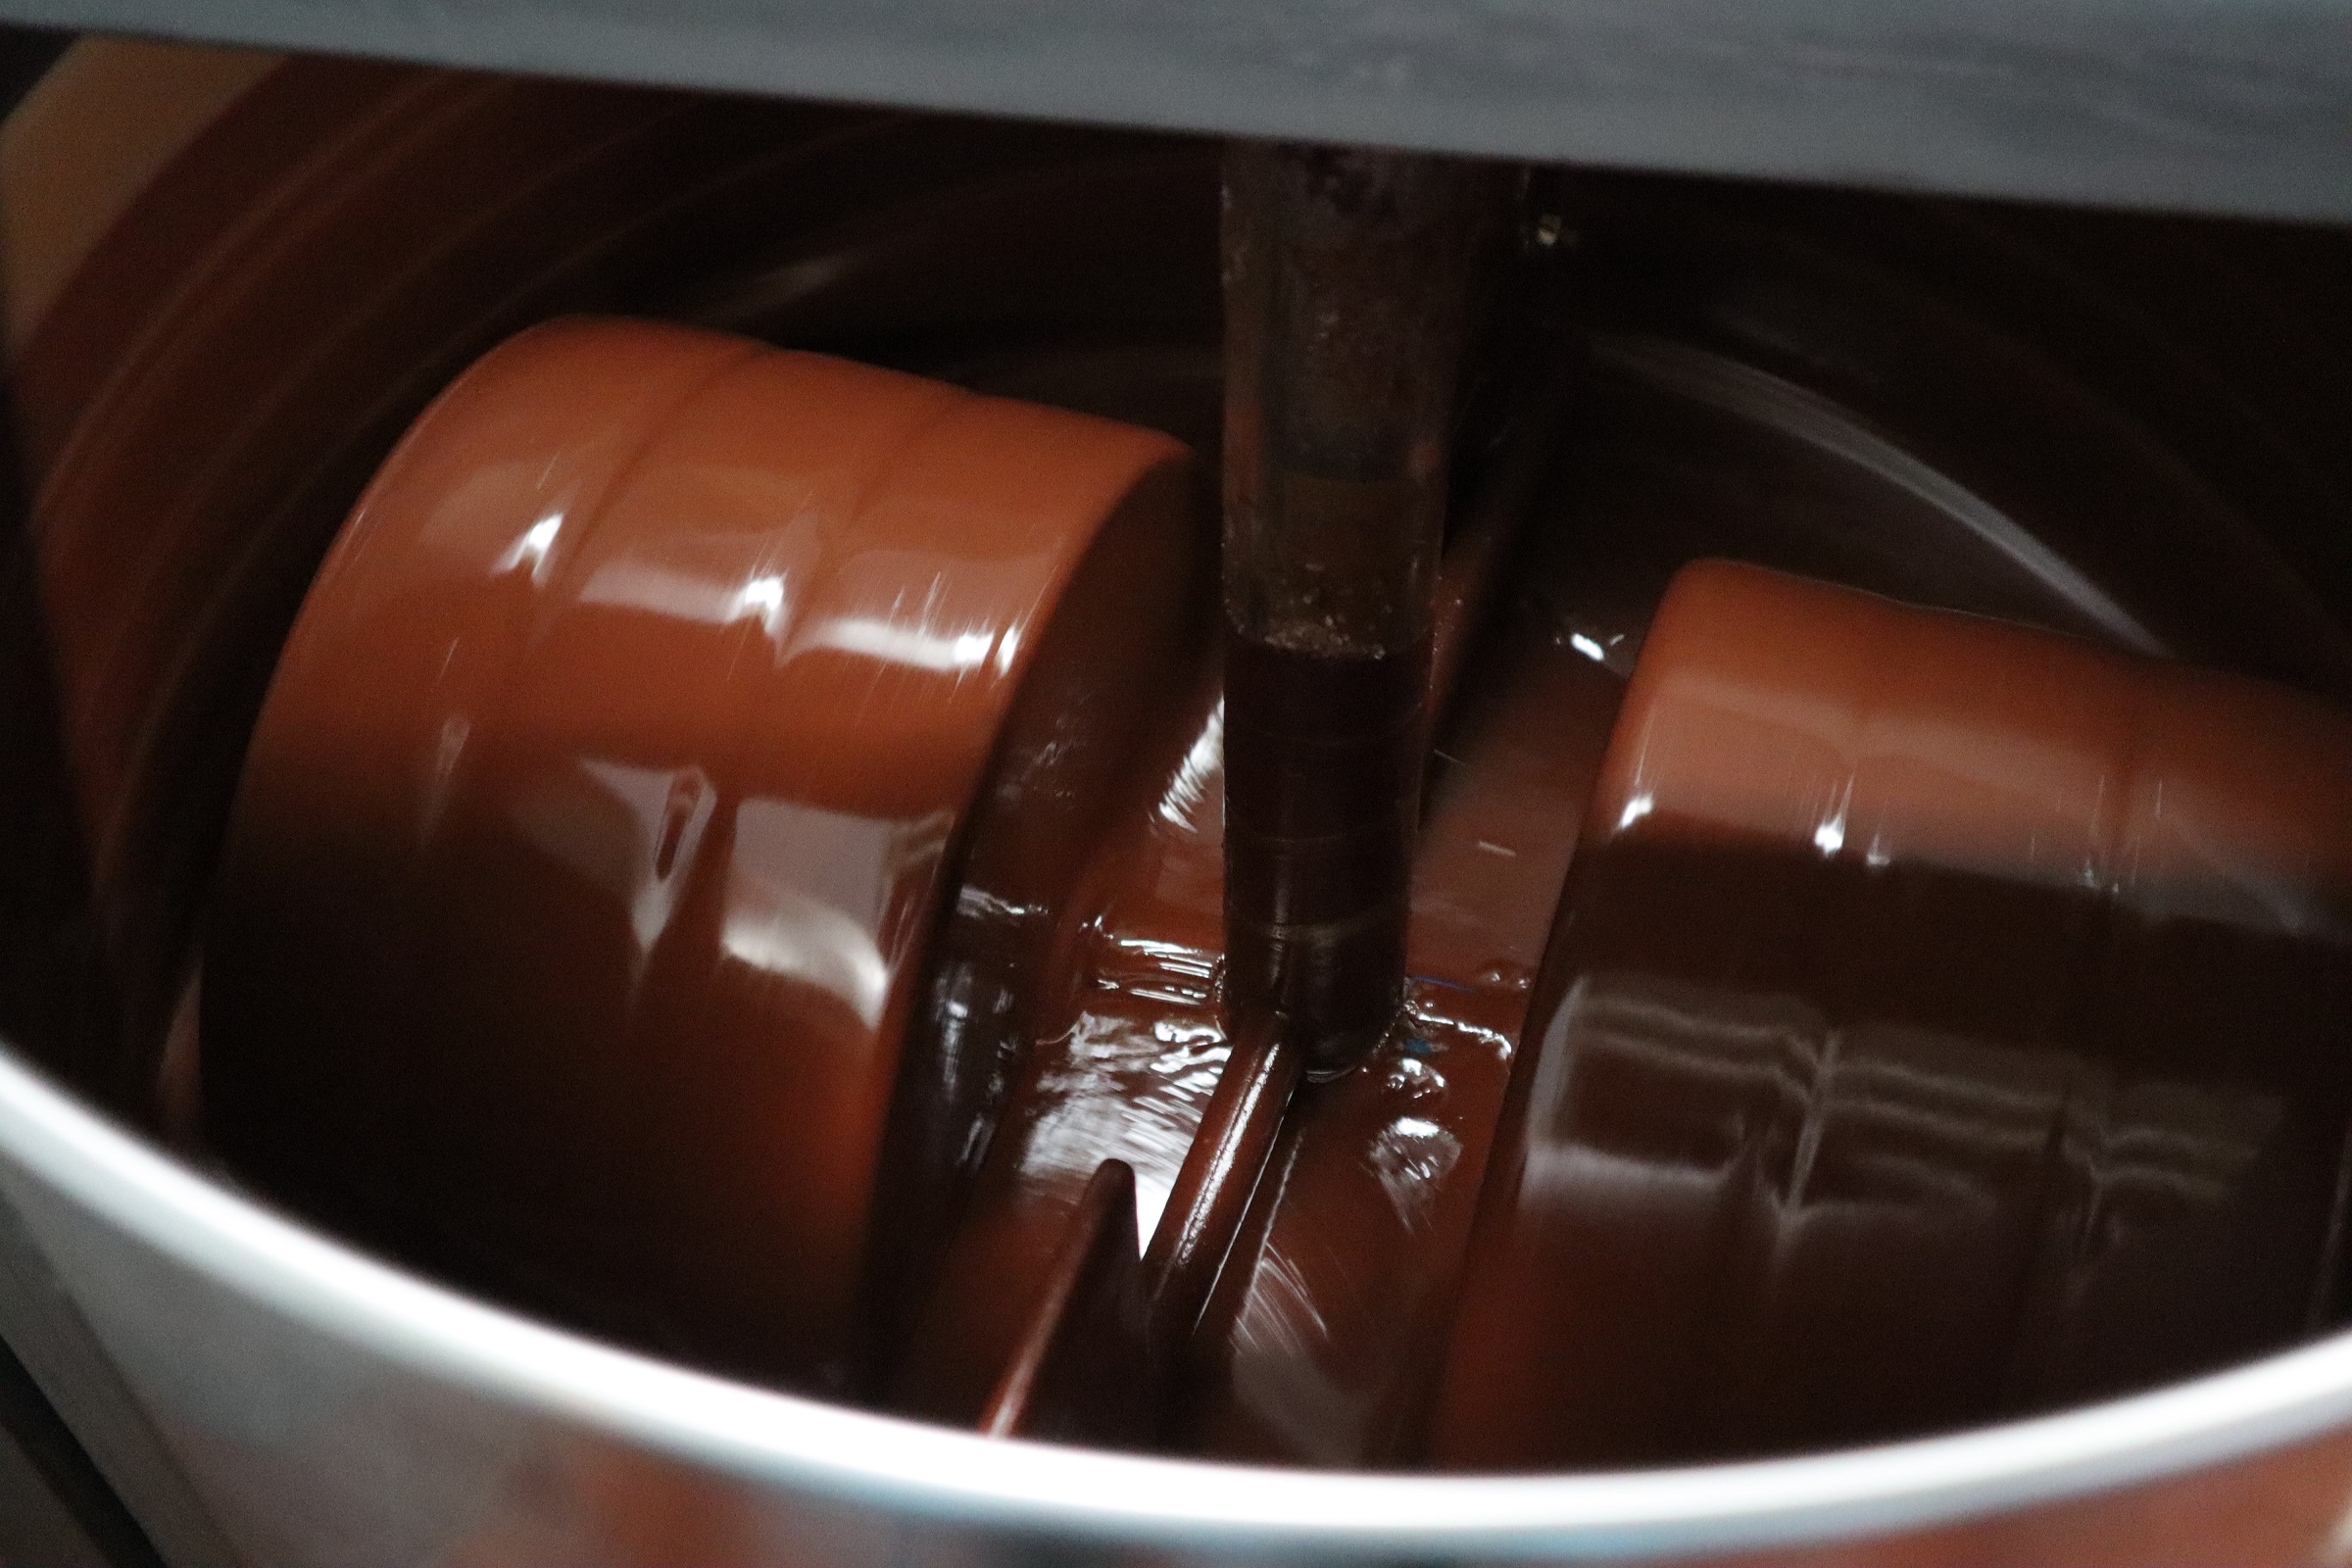 socola đen 70% sắc màu tây nguyên (dòng real chocolate cao cấp với tỷ lệ bơ ca cao bên trong lớn) 1